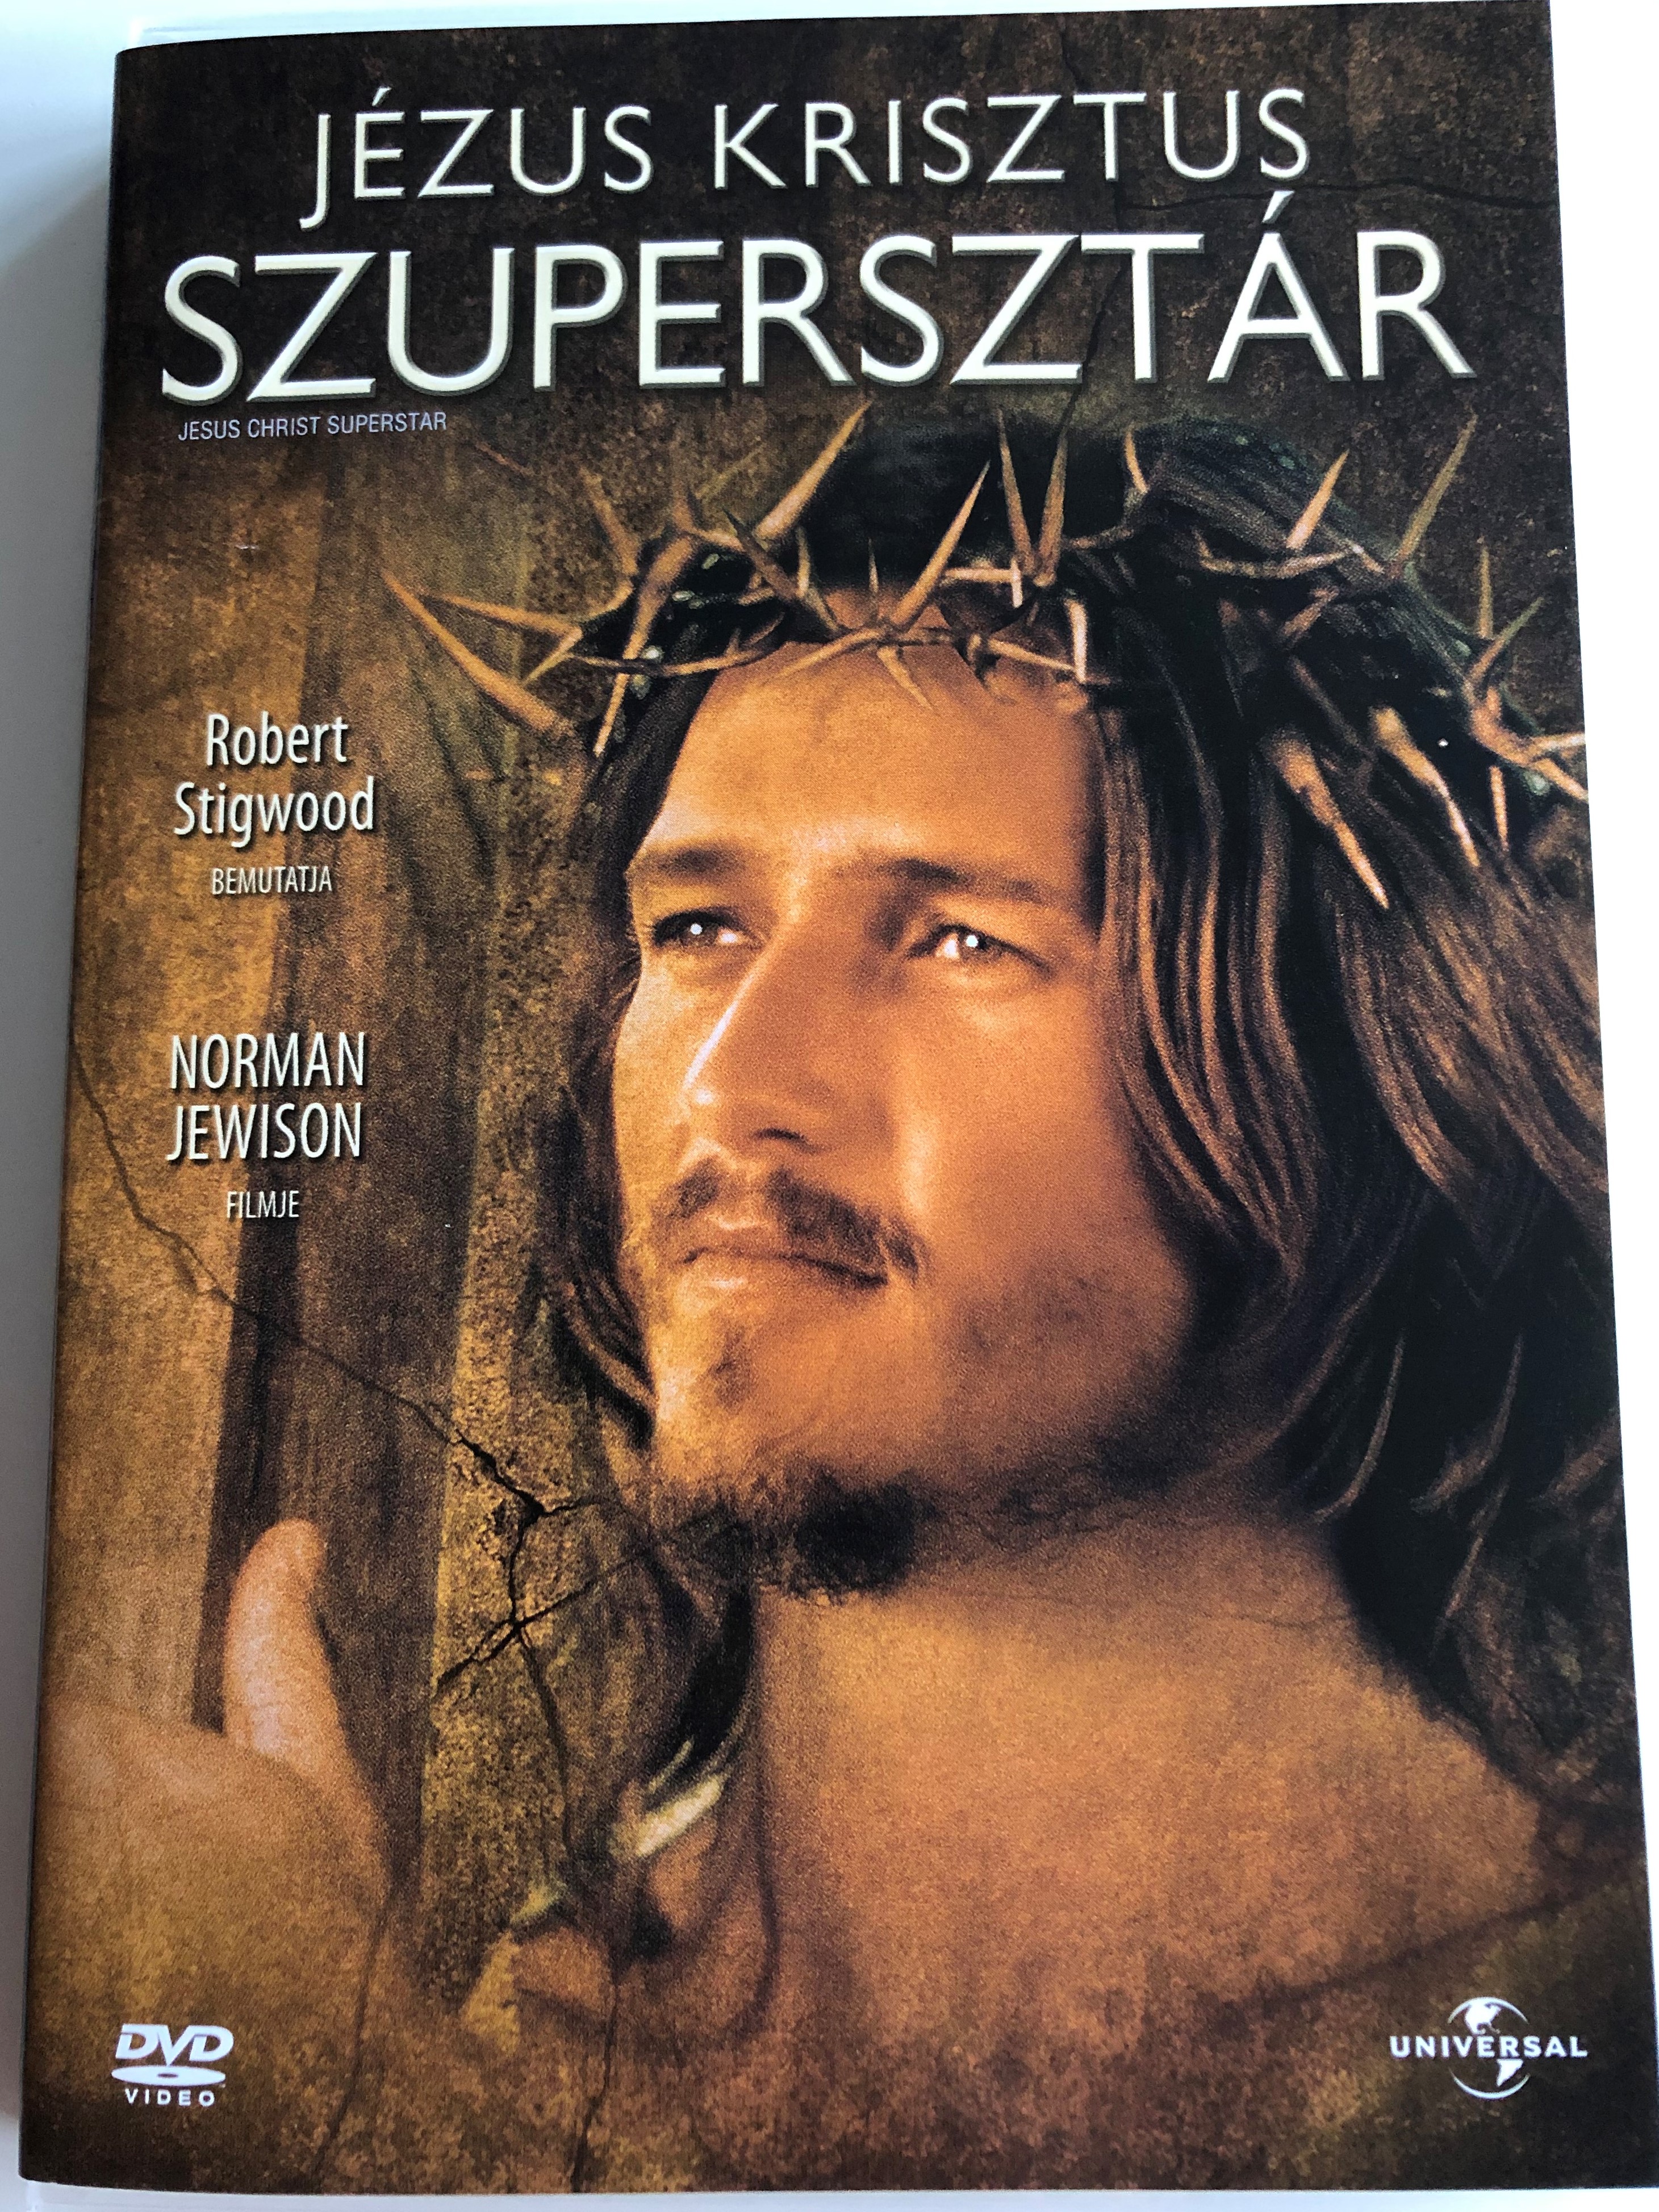 jesus-christ-superstar-dvd-1973-j-zus-krisztus-szuperszt-r-directed-by-norman-jewison-1.jpg